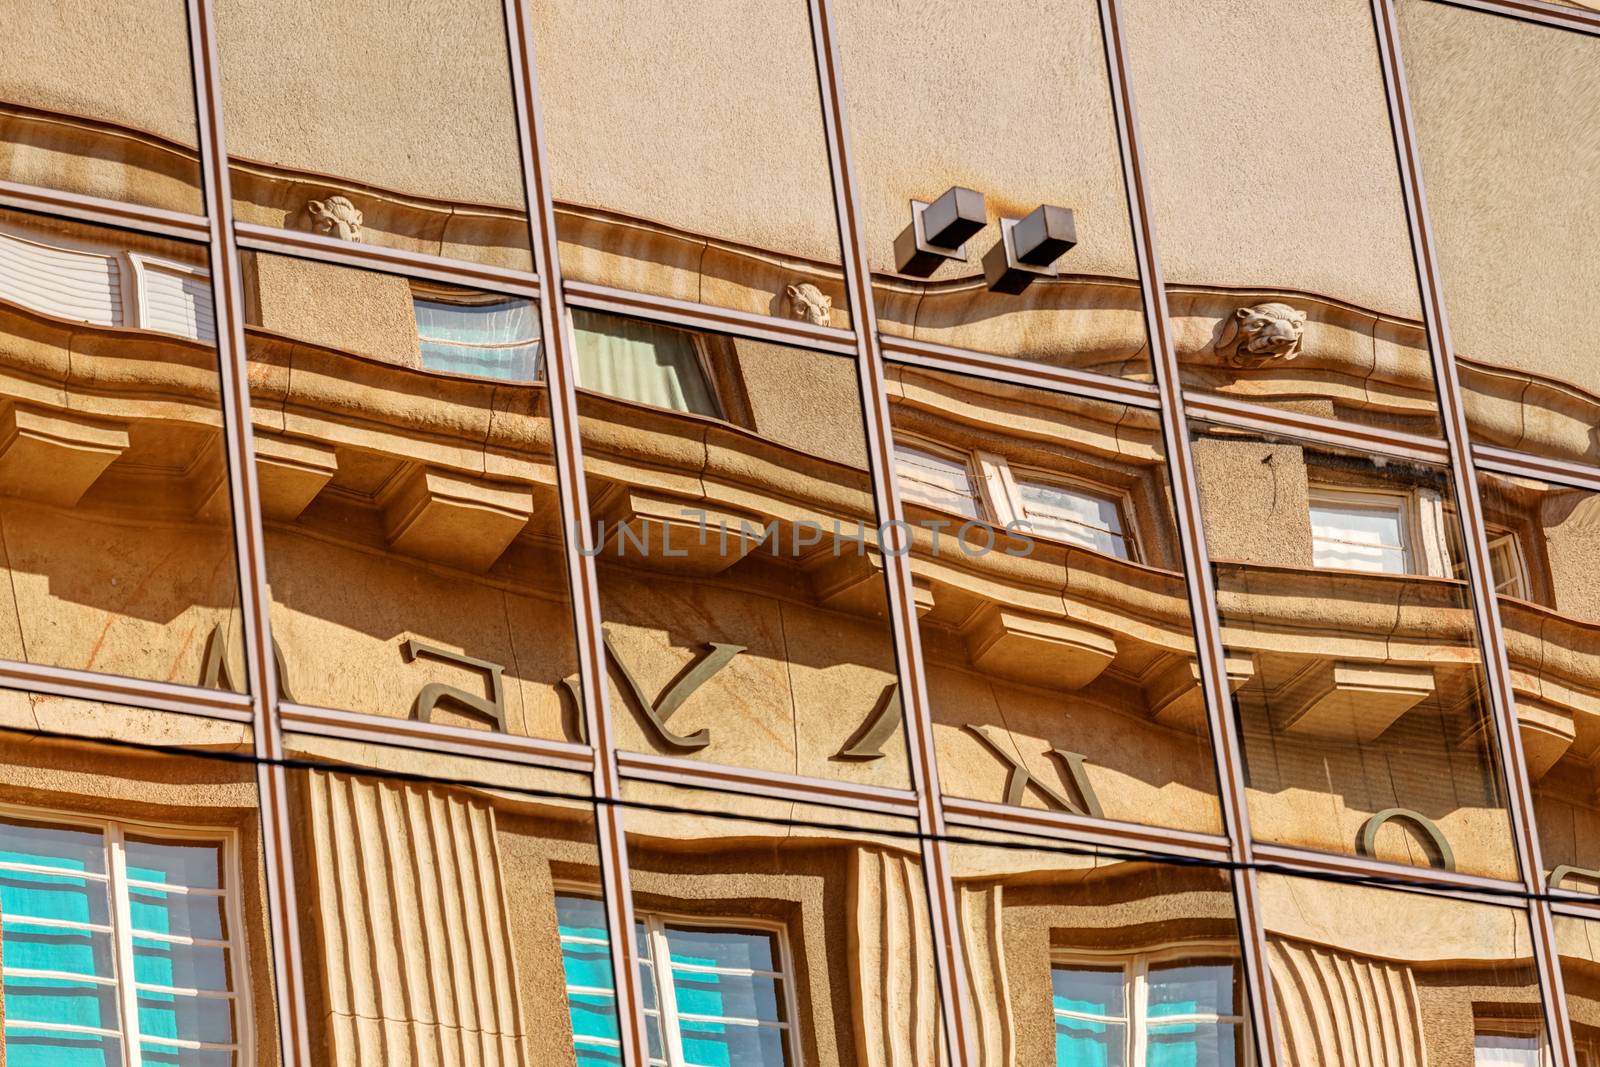 reflection of stone facade on modern glass facade